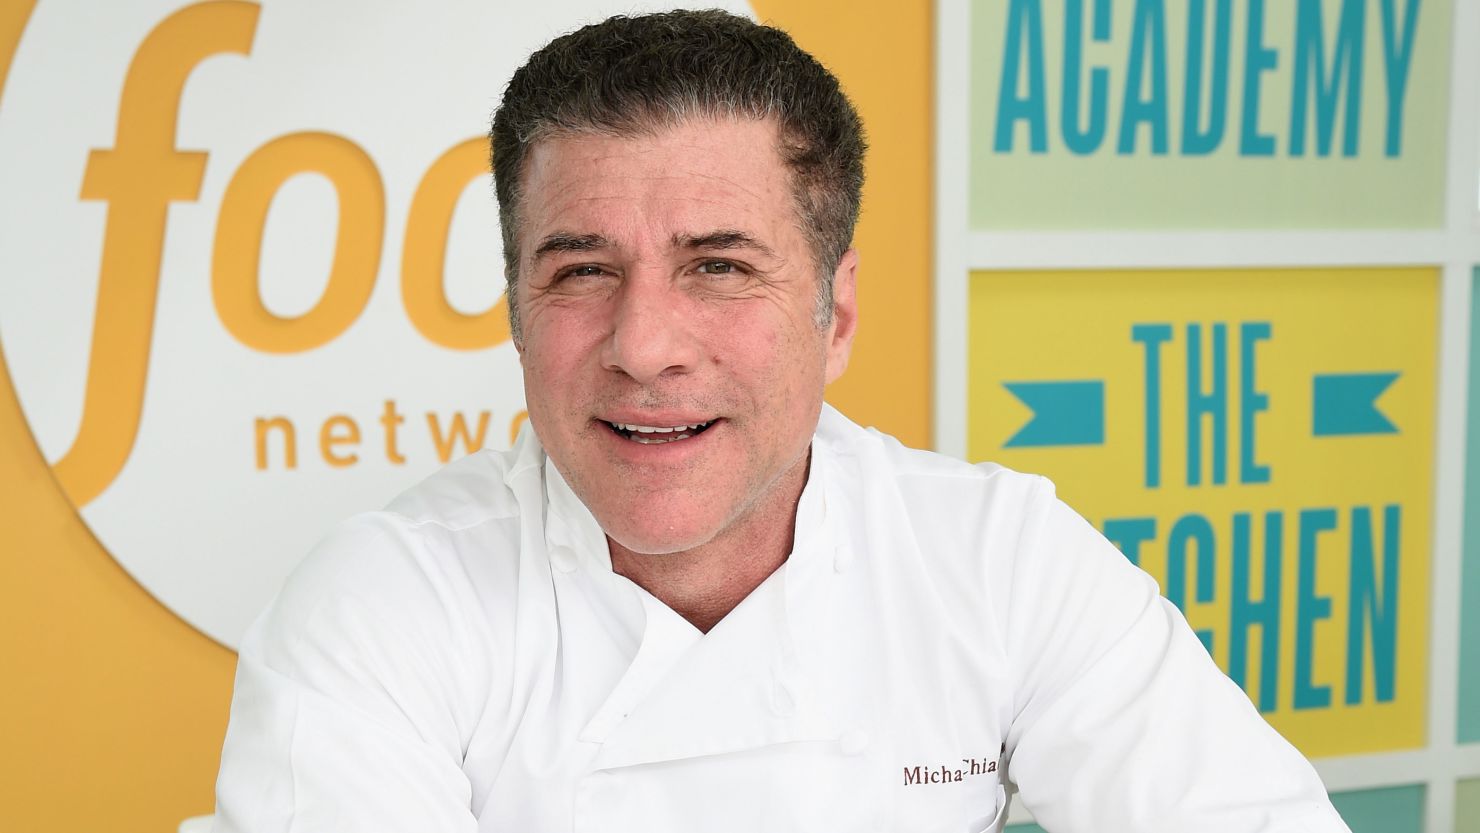 Chef Michael Chiarello in Miami in 2015. 